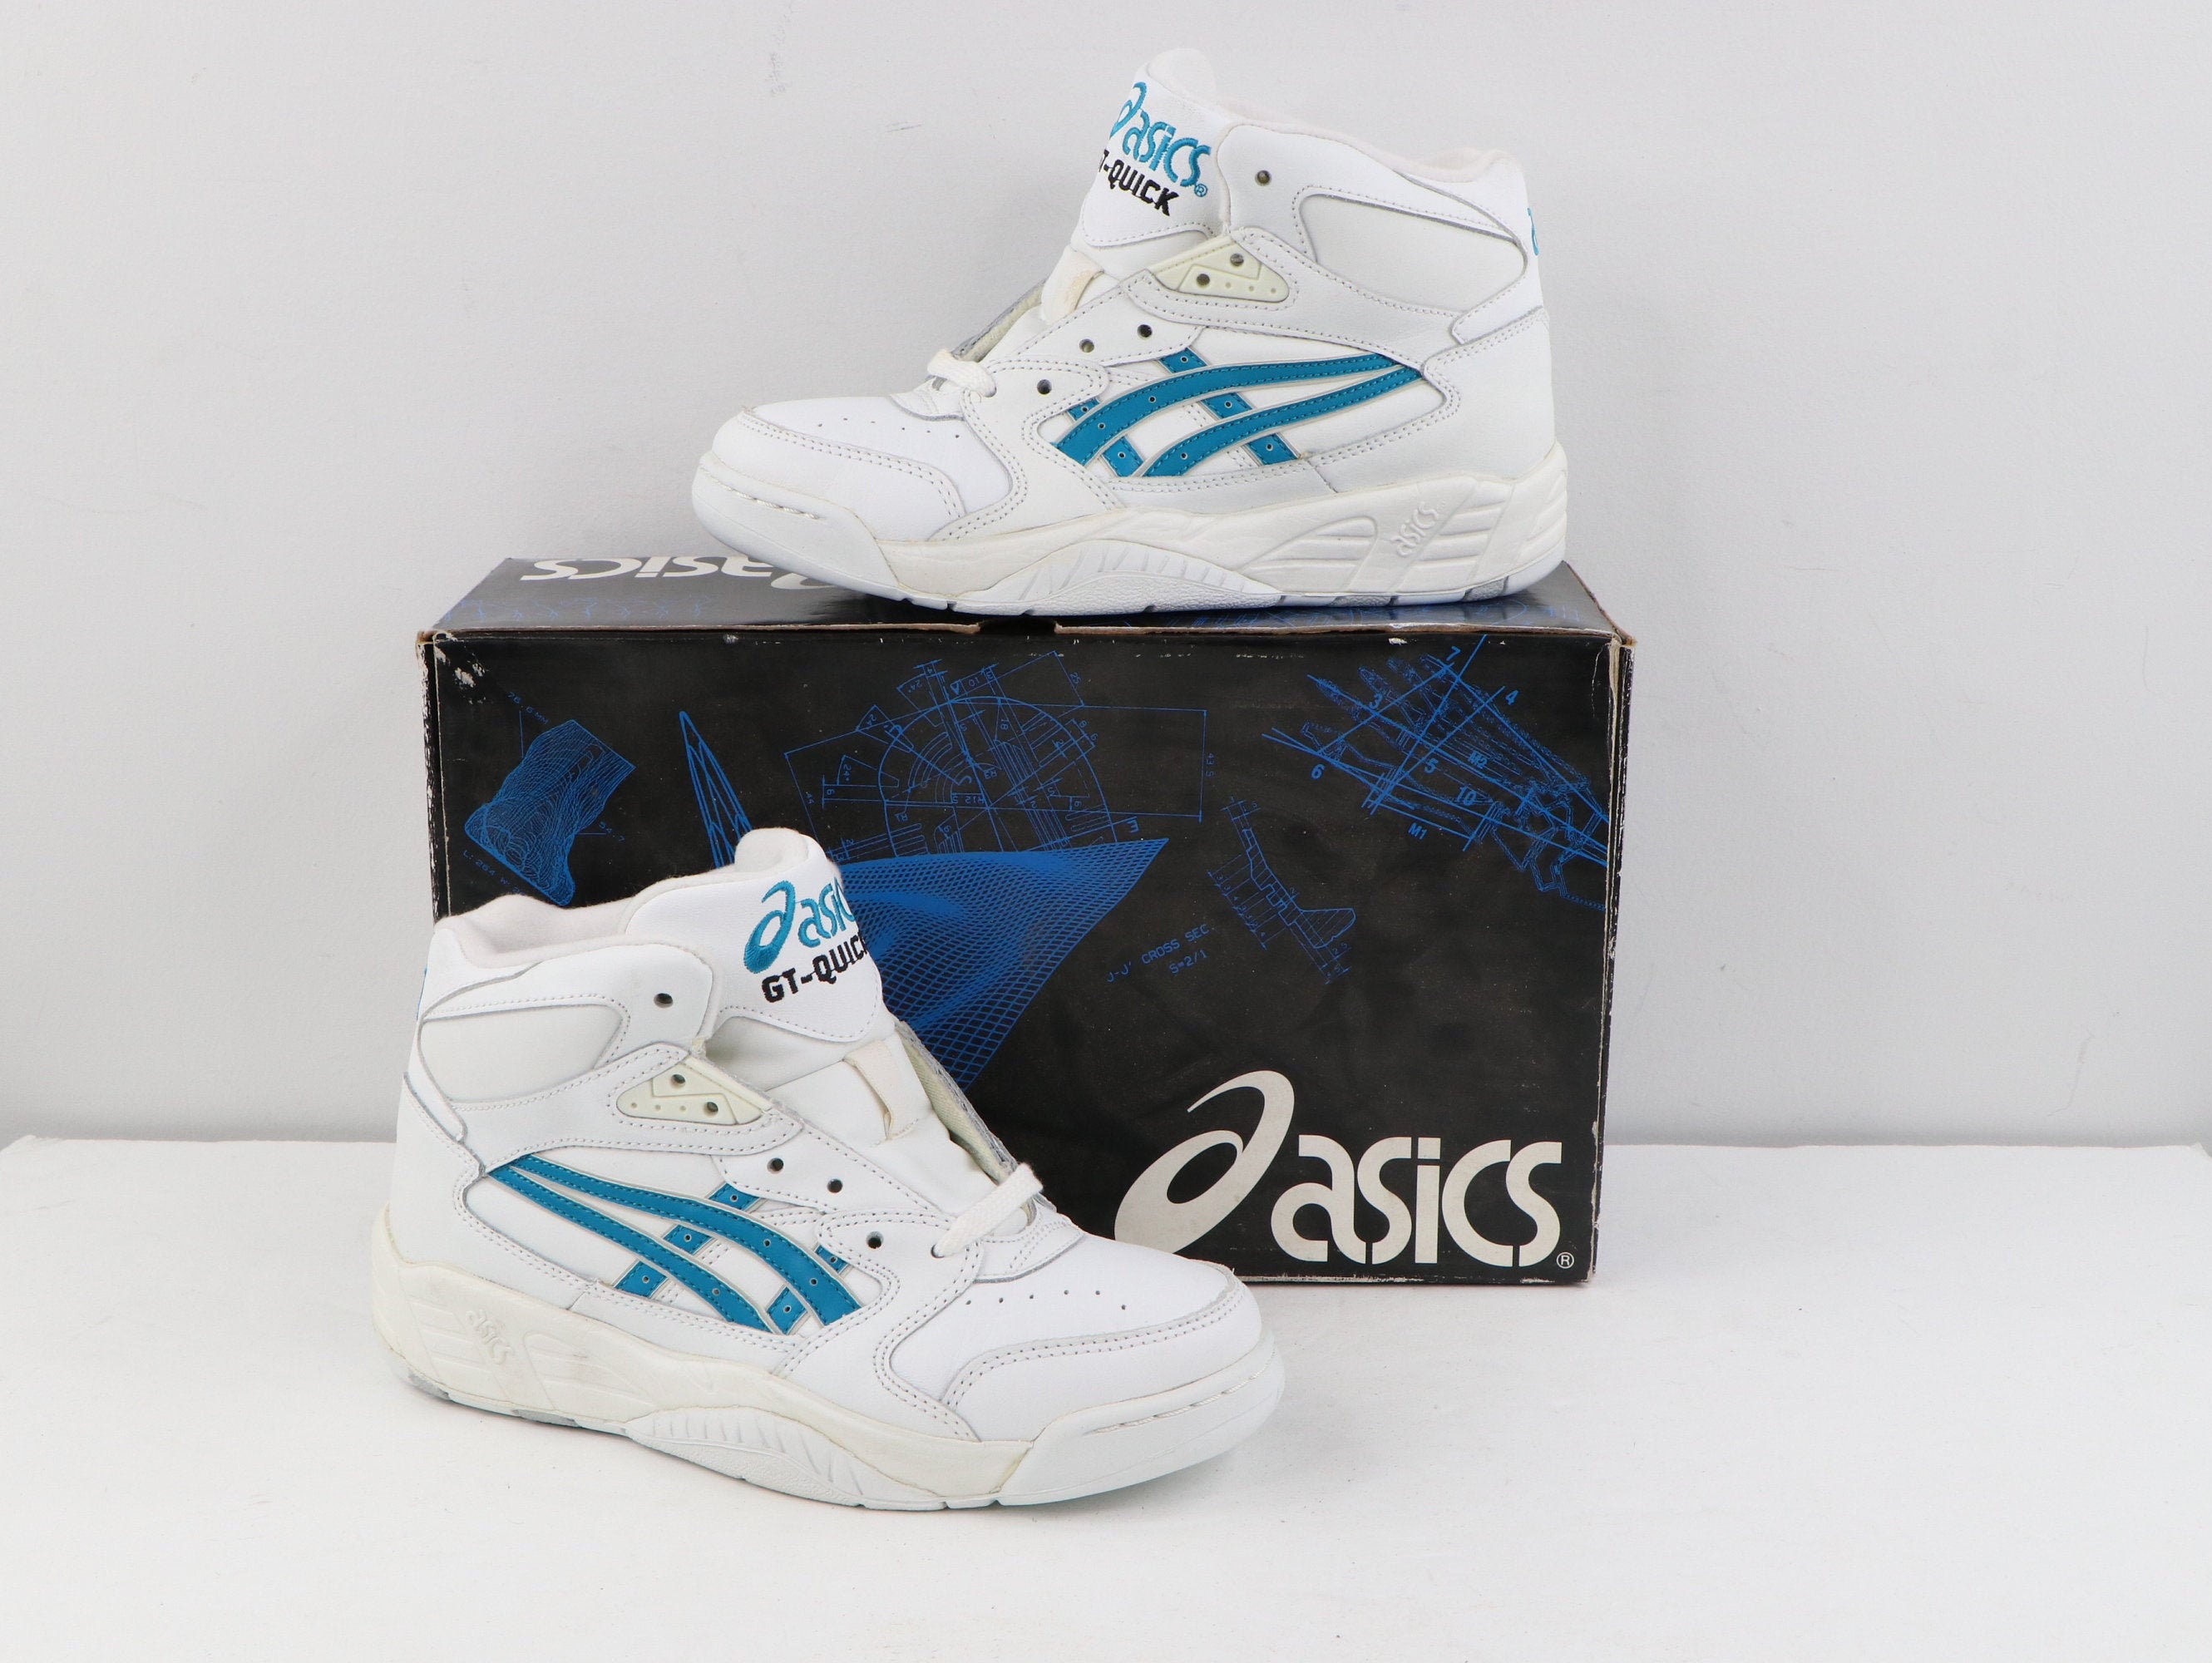 90s Asics Shoes - Etsy